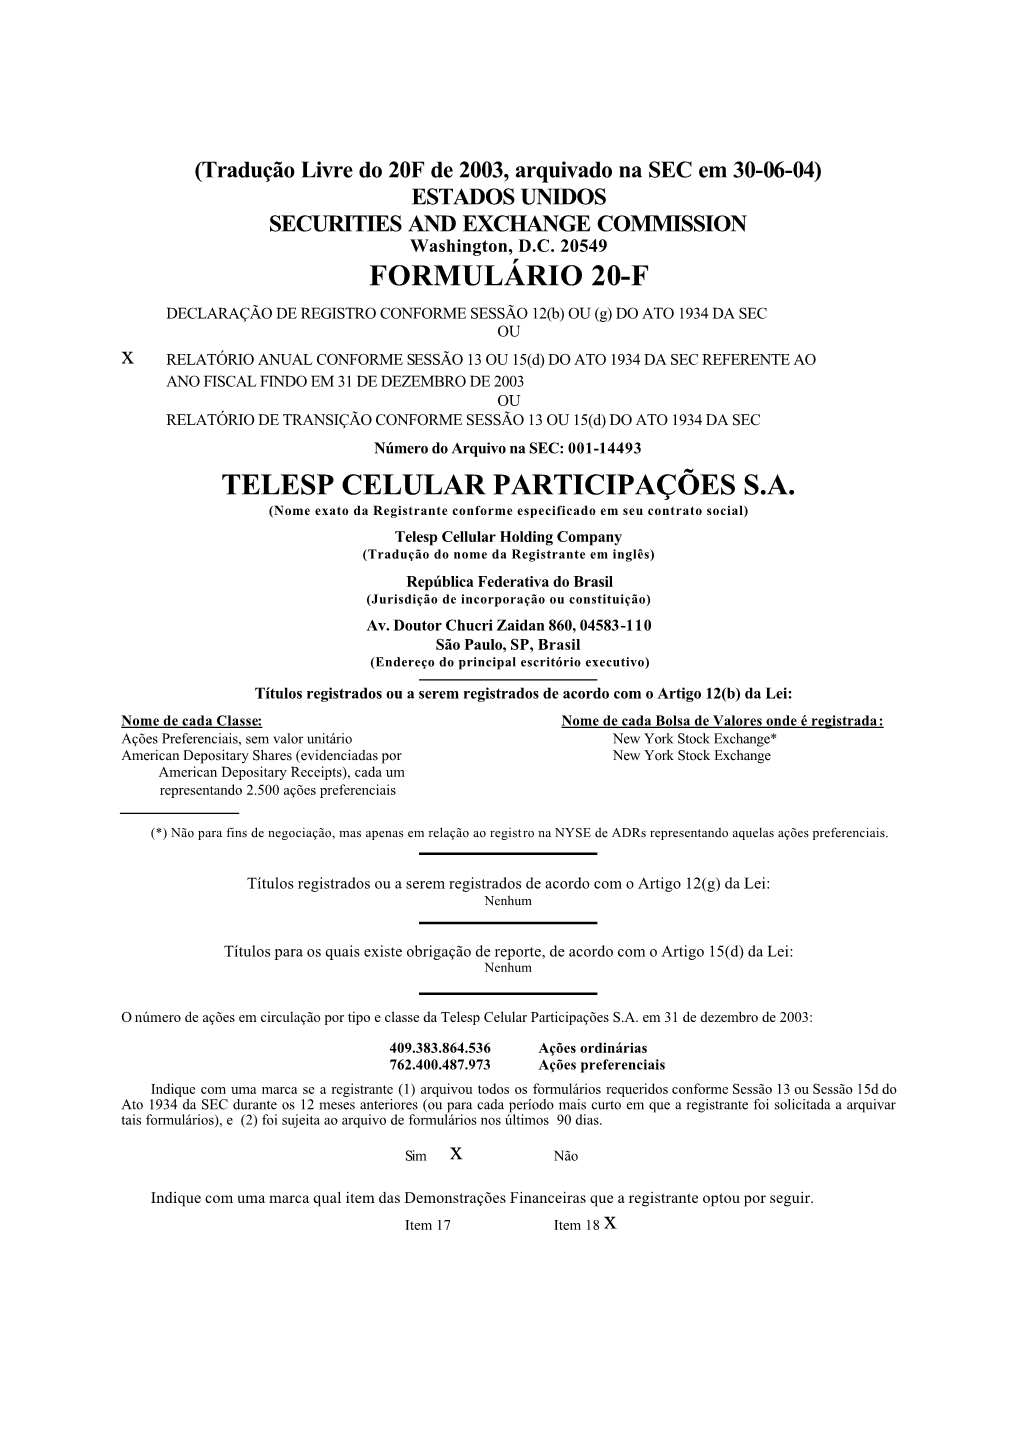 Formulário 20-F Telesp Celular Participações S.A